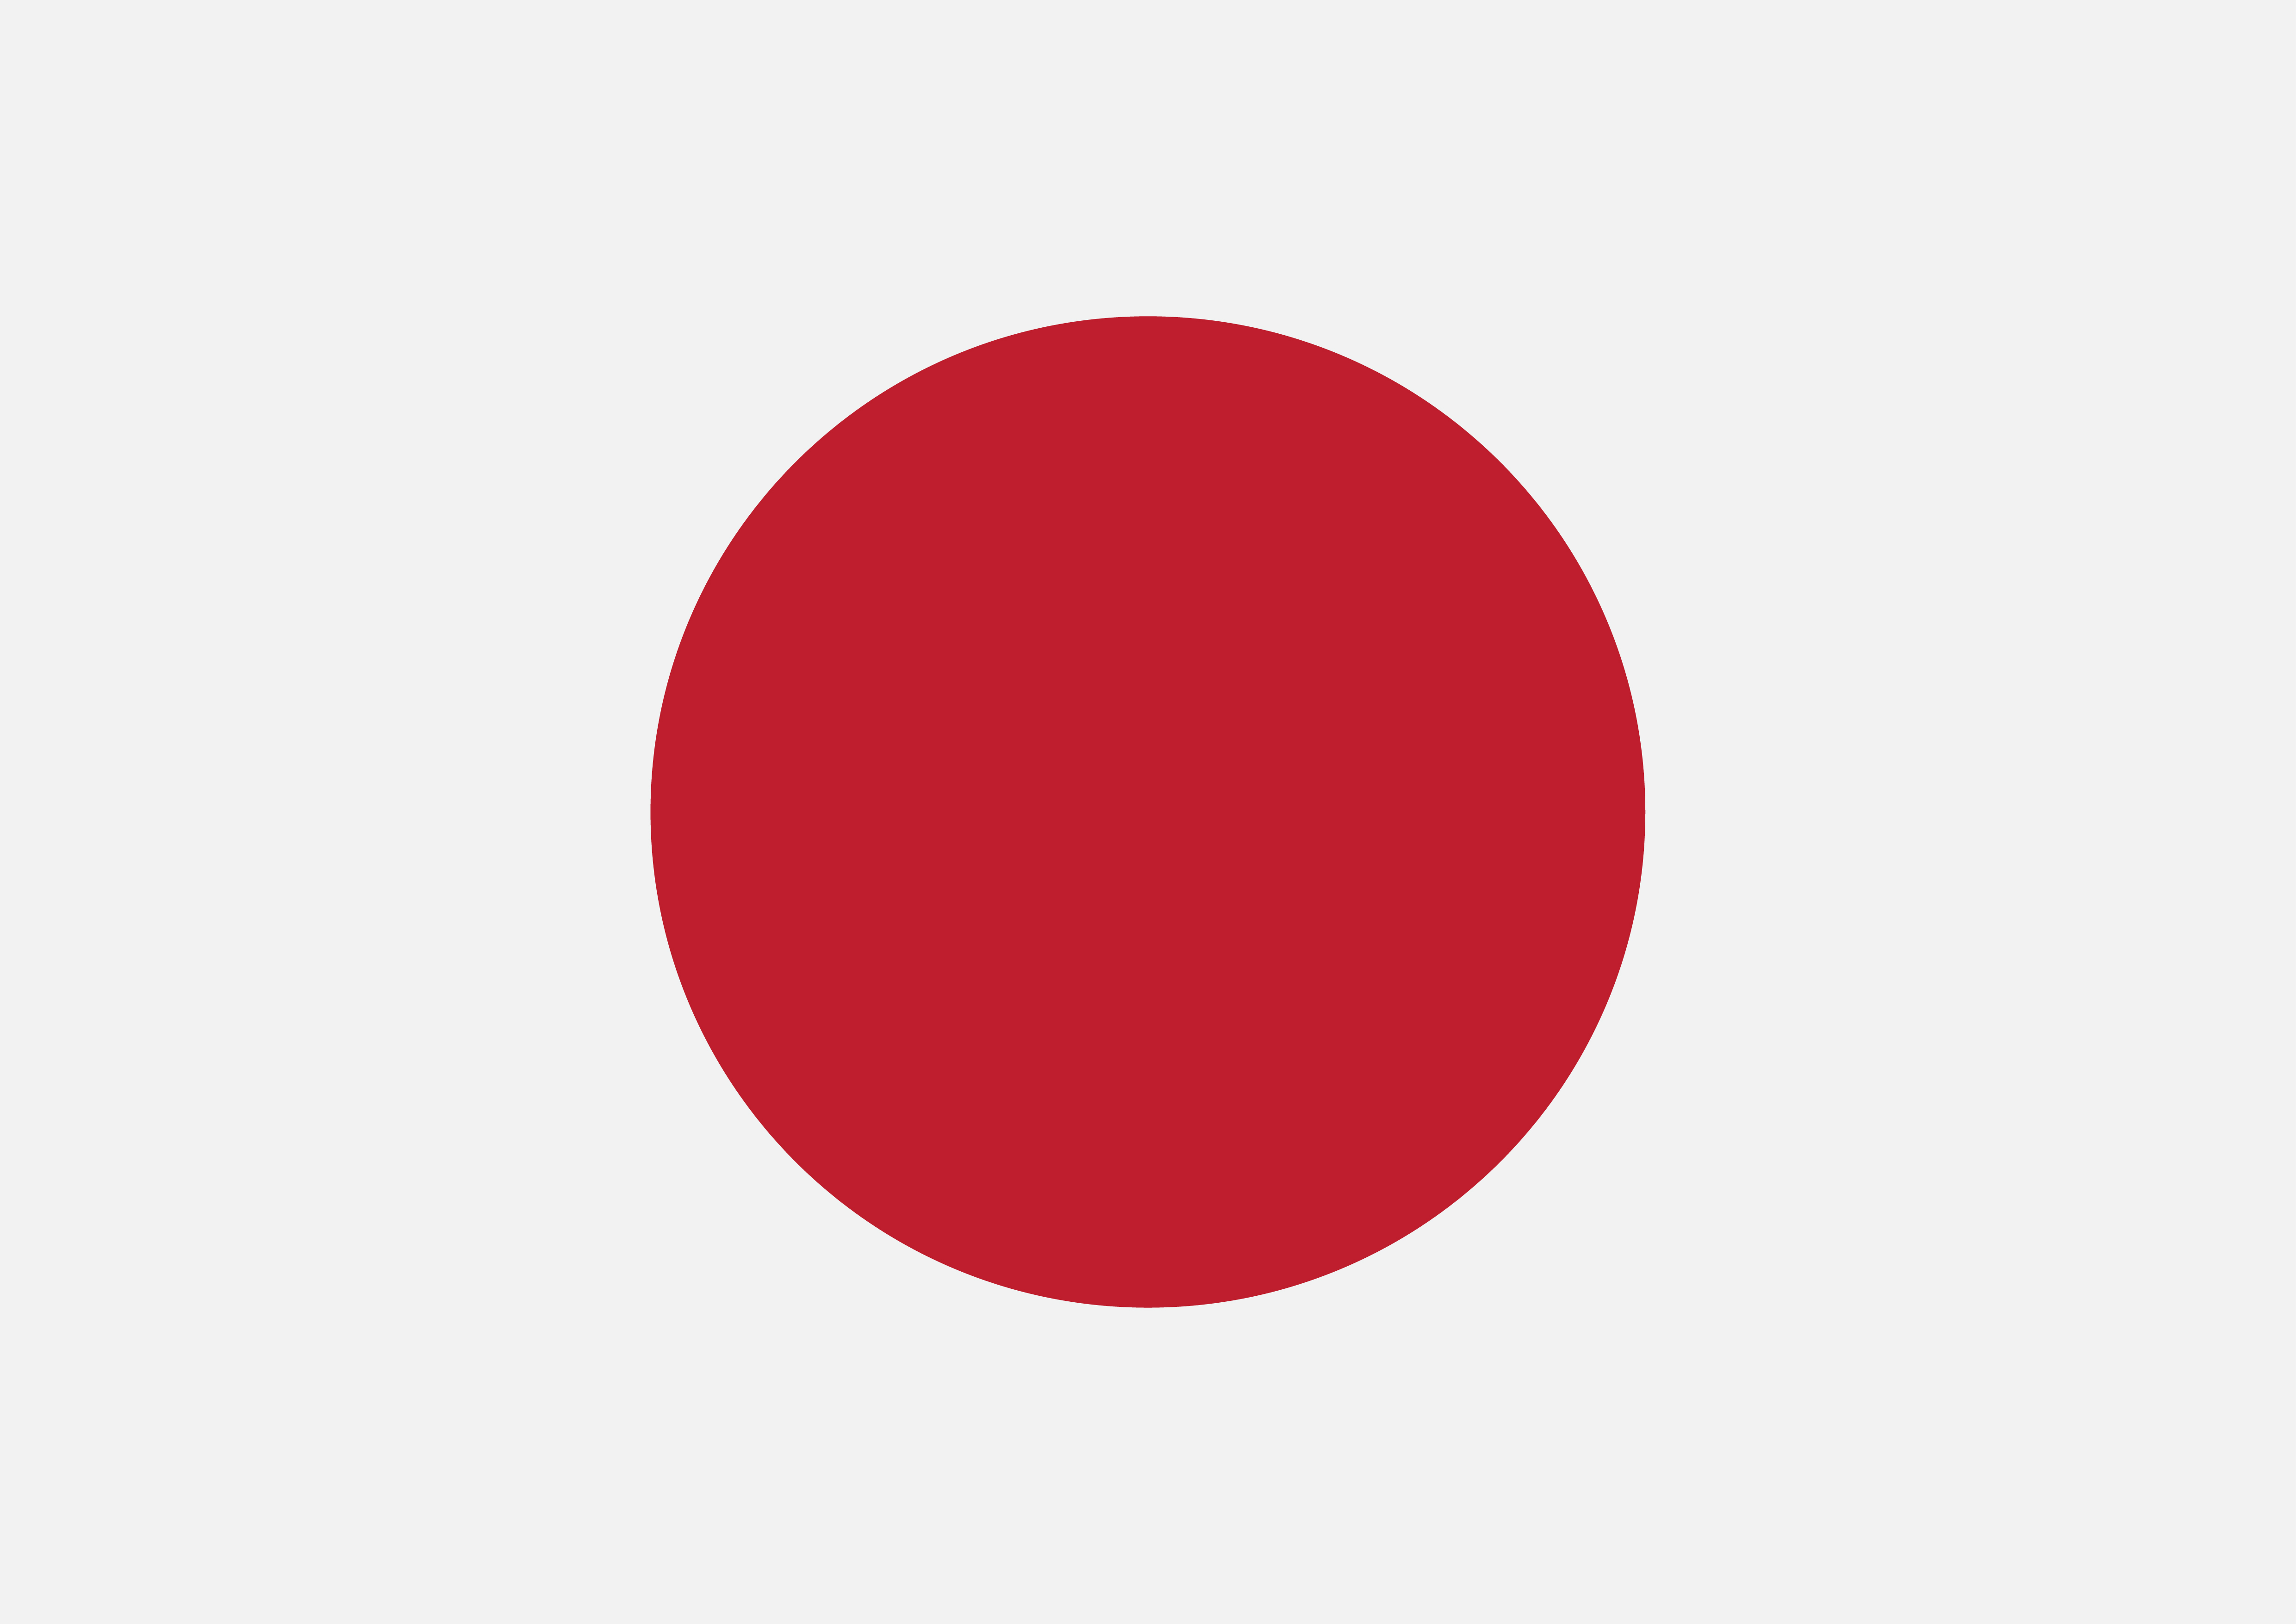 Japan Flag symbol sign - Download Free Vectors, Clipart ...